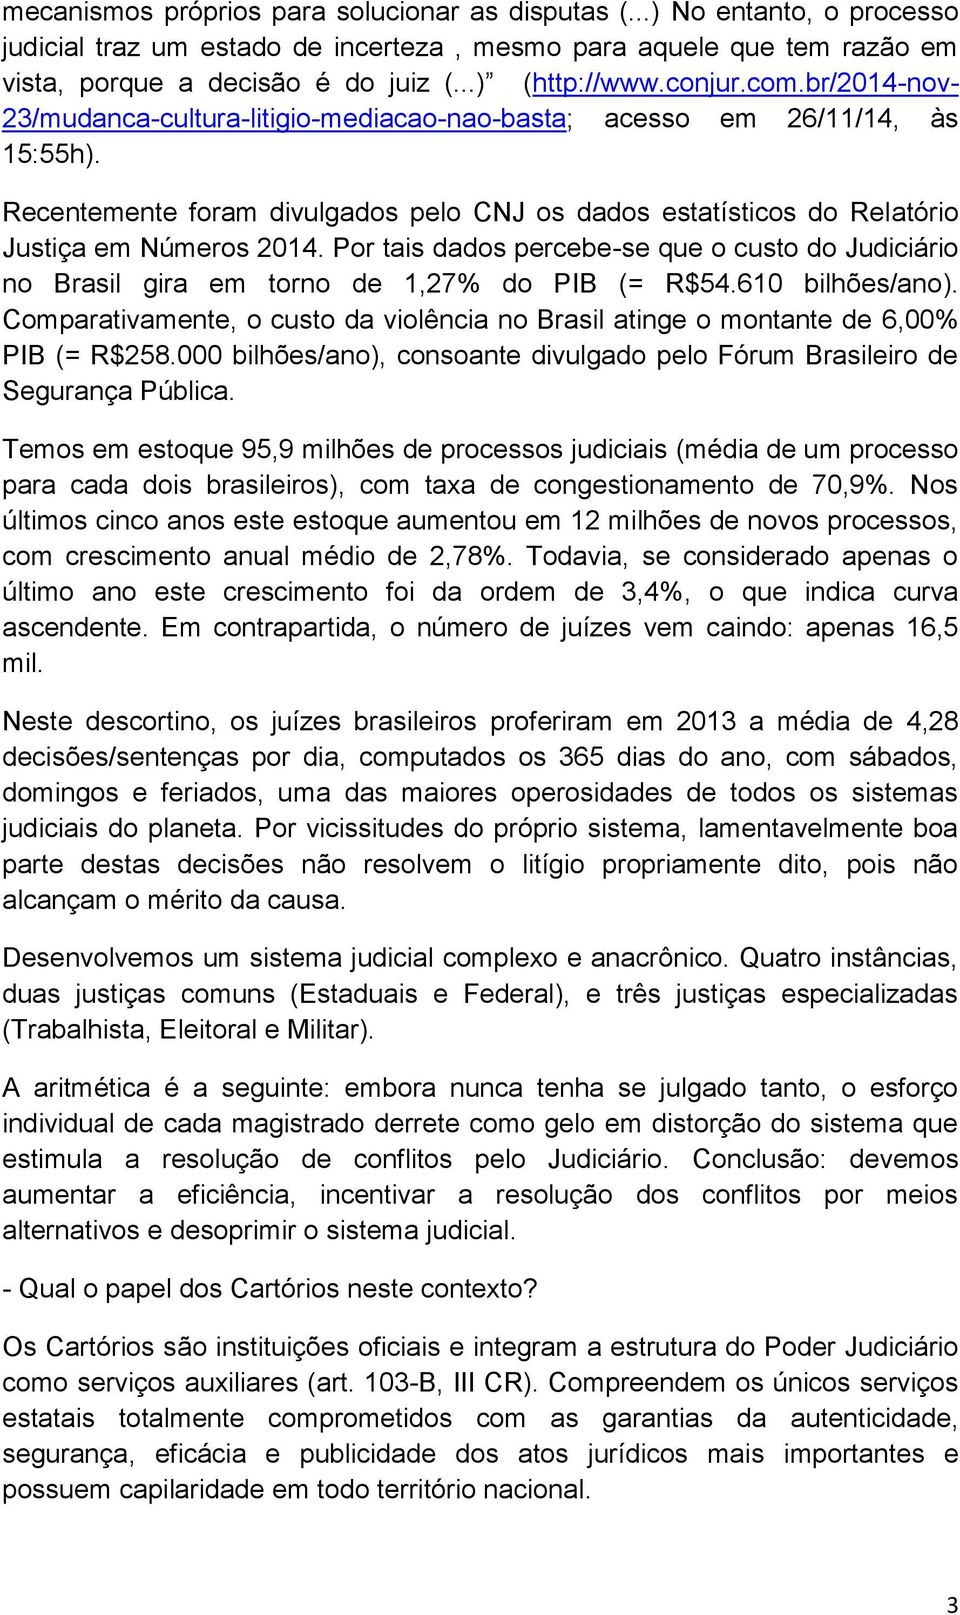 Recentemente foram divulgados pelo CNJ os dados estatísticos do Relatório Justiça em Números 2014. Por tais dados percebe-se que o custo do Judiciário no Brasil gira em torno de 1,27% do PIB (= R$54.